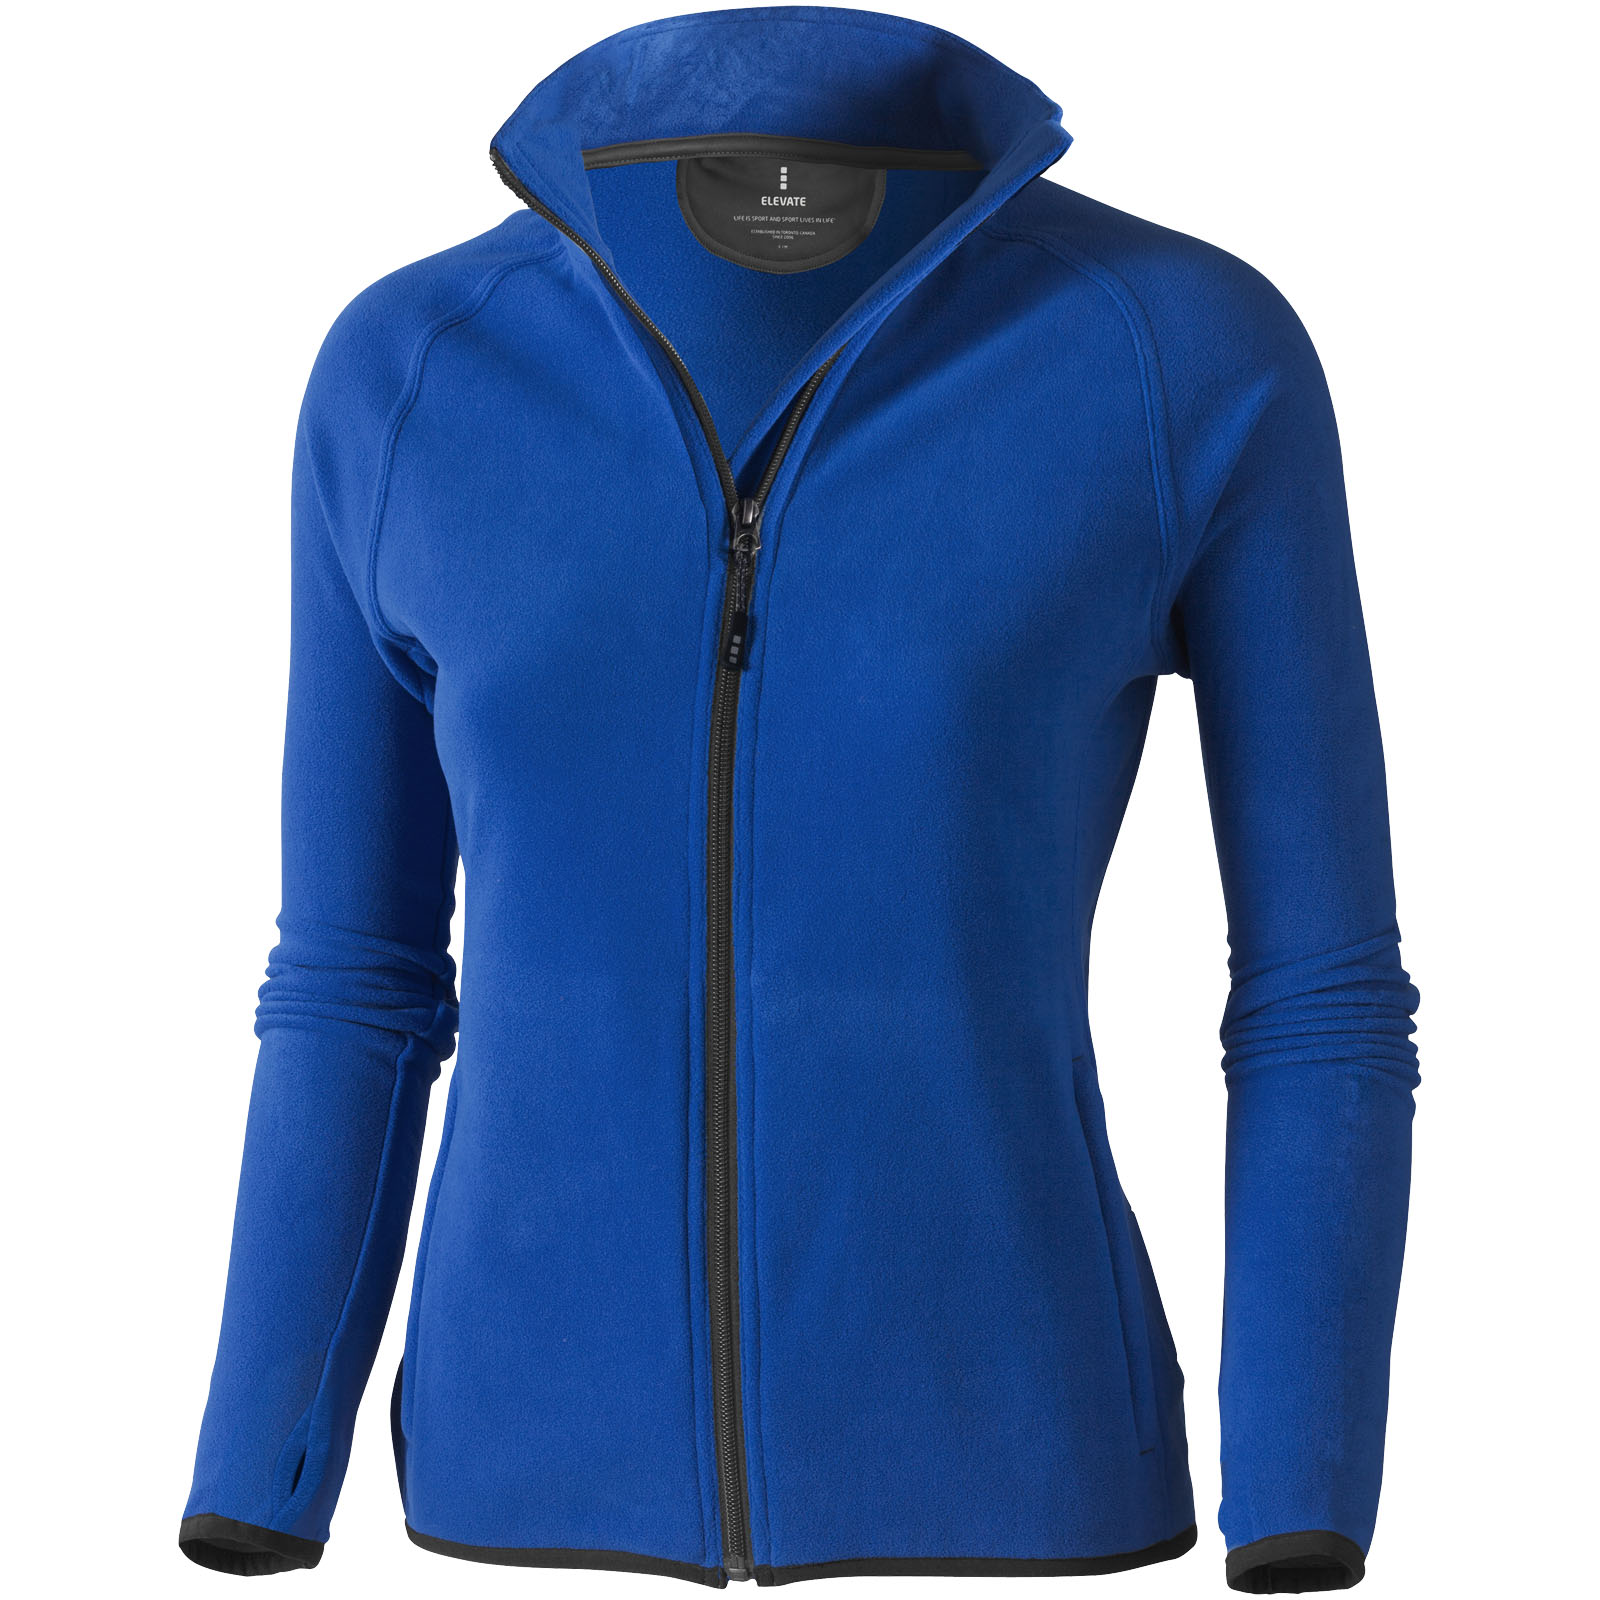 Fleece - Brossard women's full zip fleece jacket